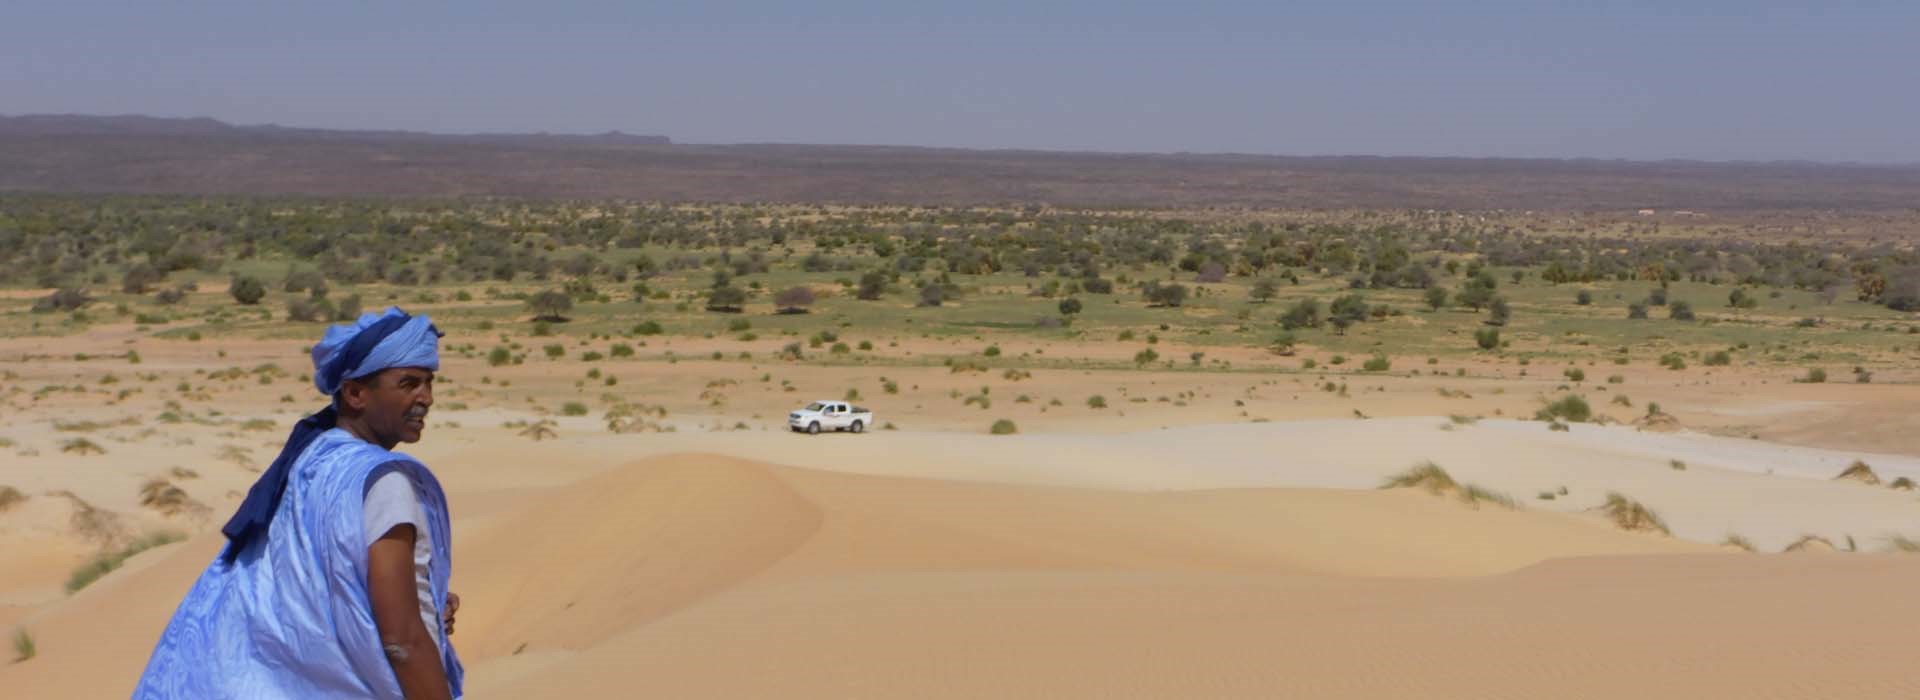 Visiter Tanouchert - Mauritanie